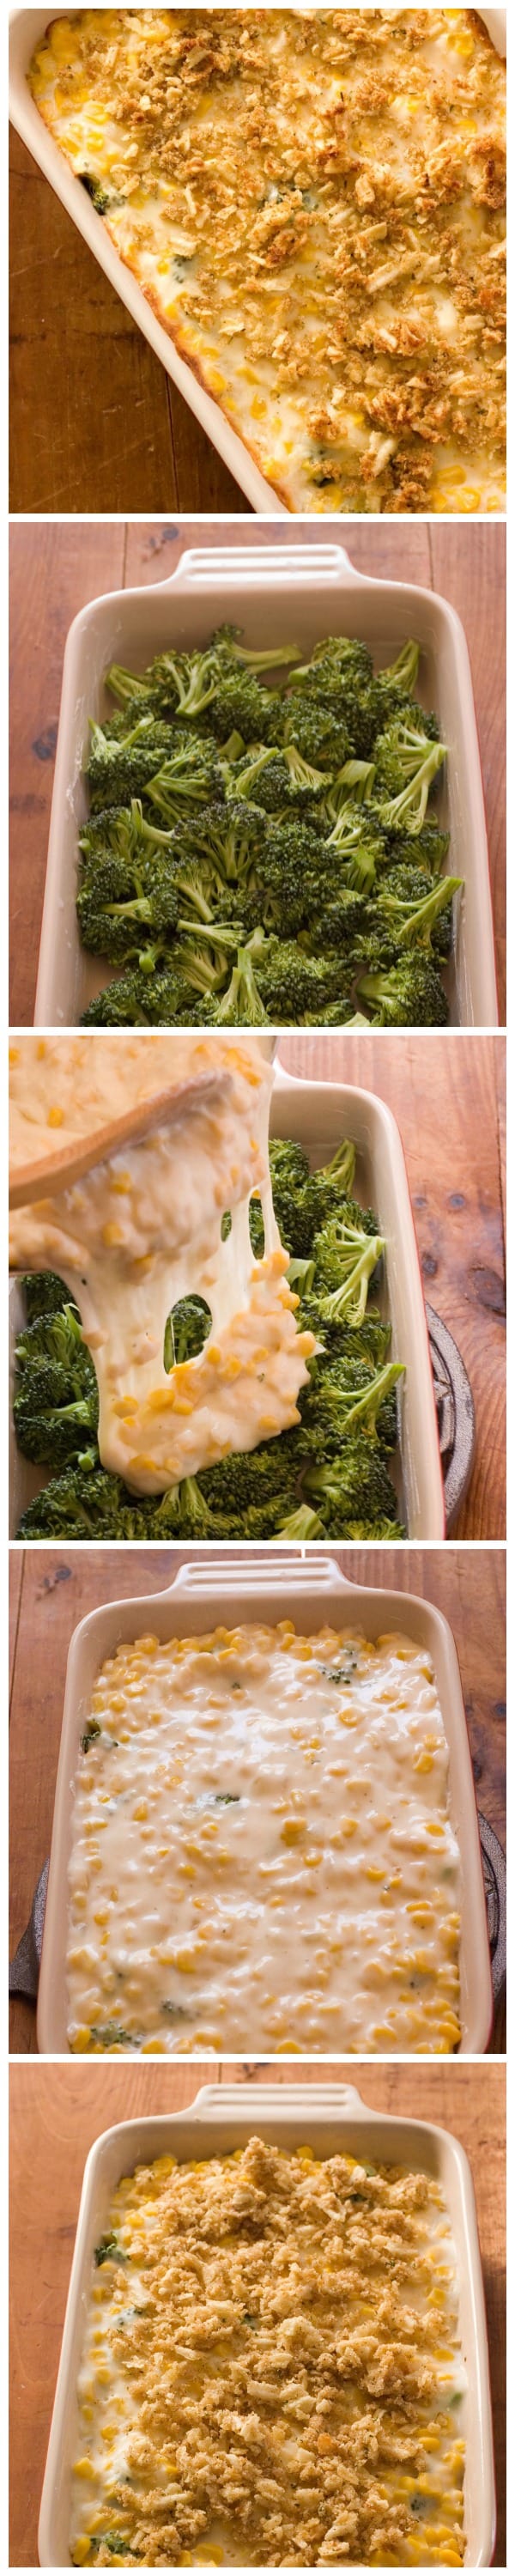 Cheesy Broccoli and Corn Casserole1 Creamy and Cheesy Broccoli and Corn Casserole Recipe